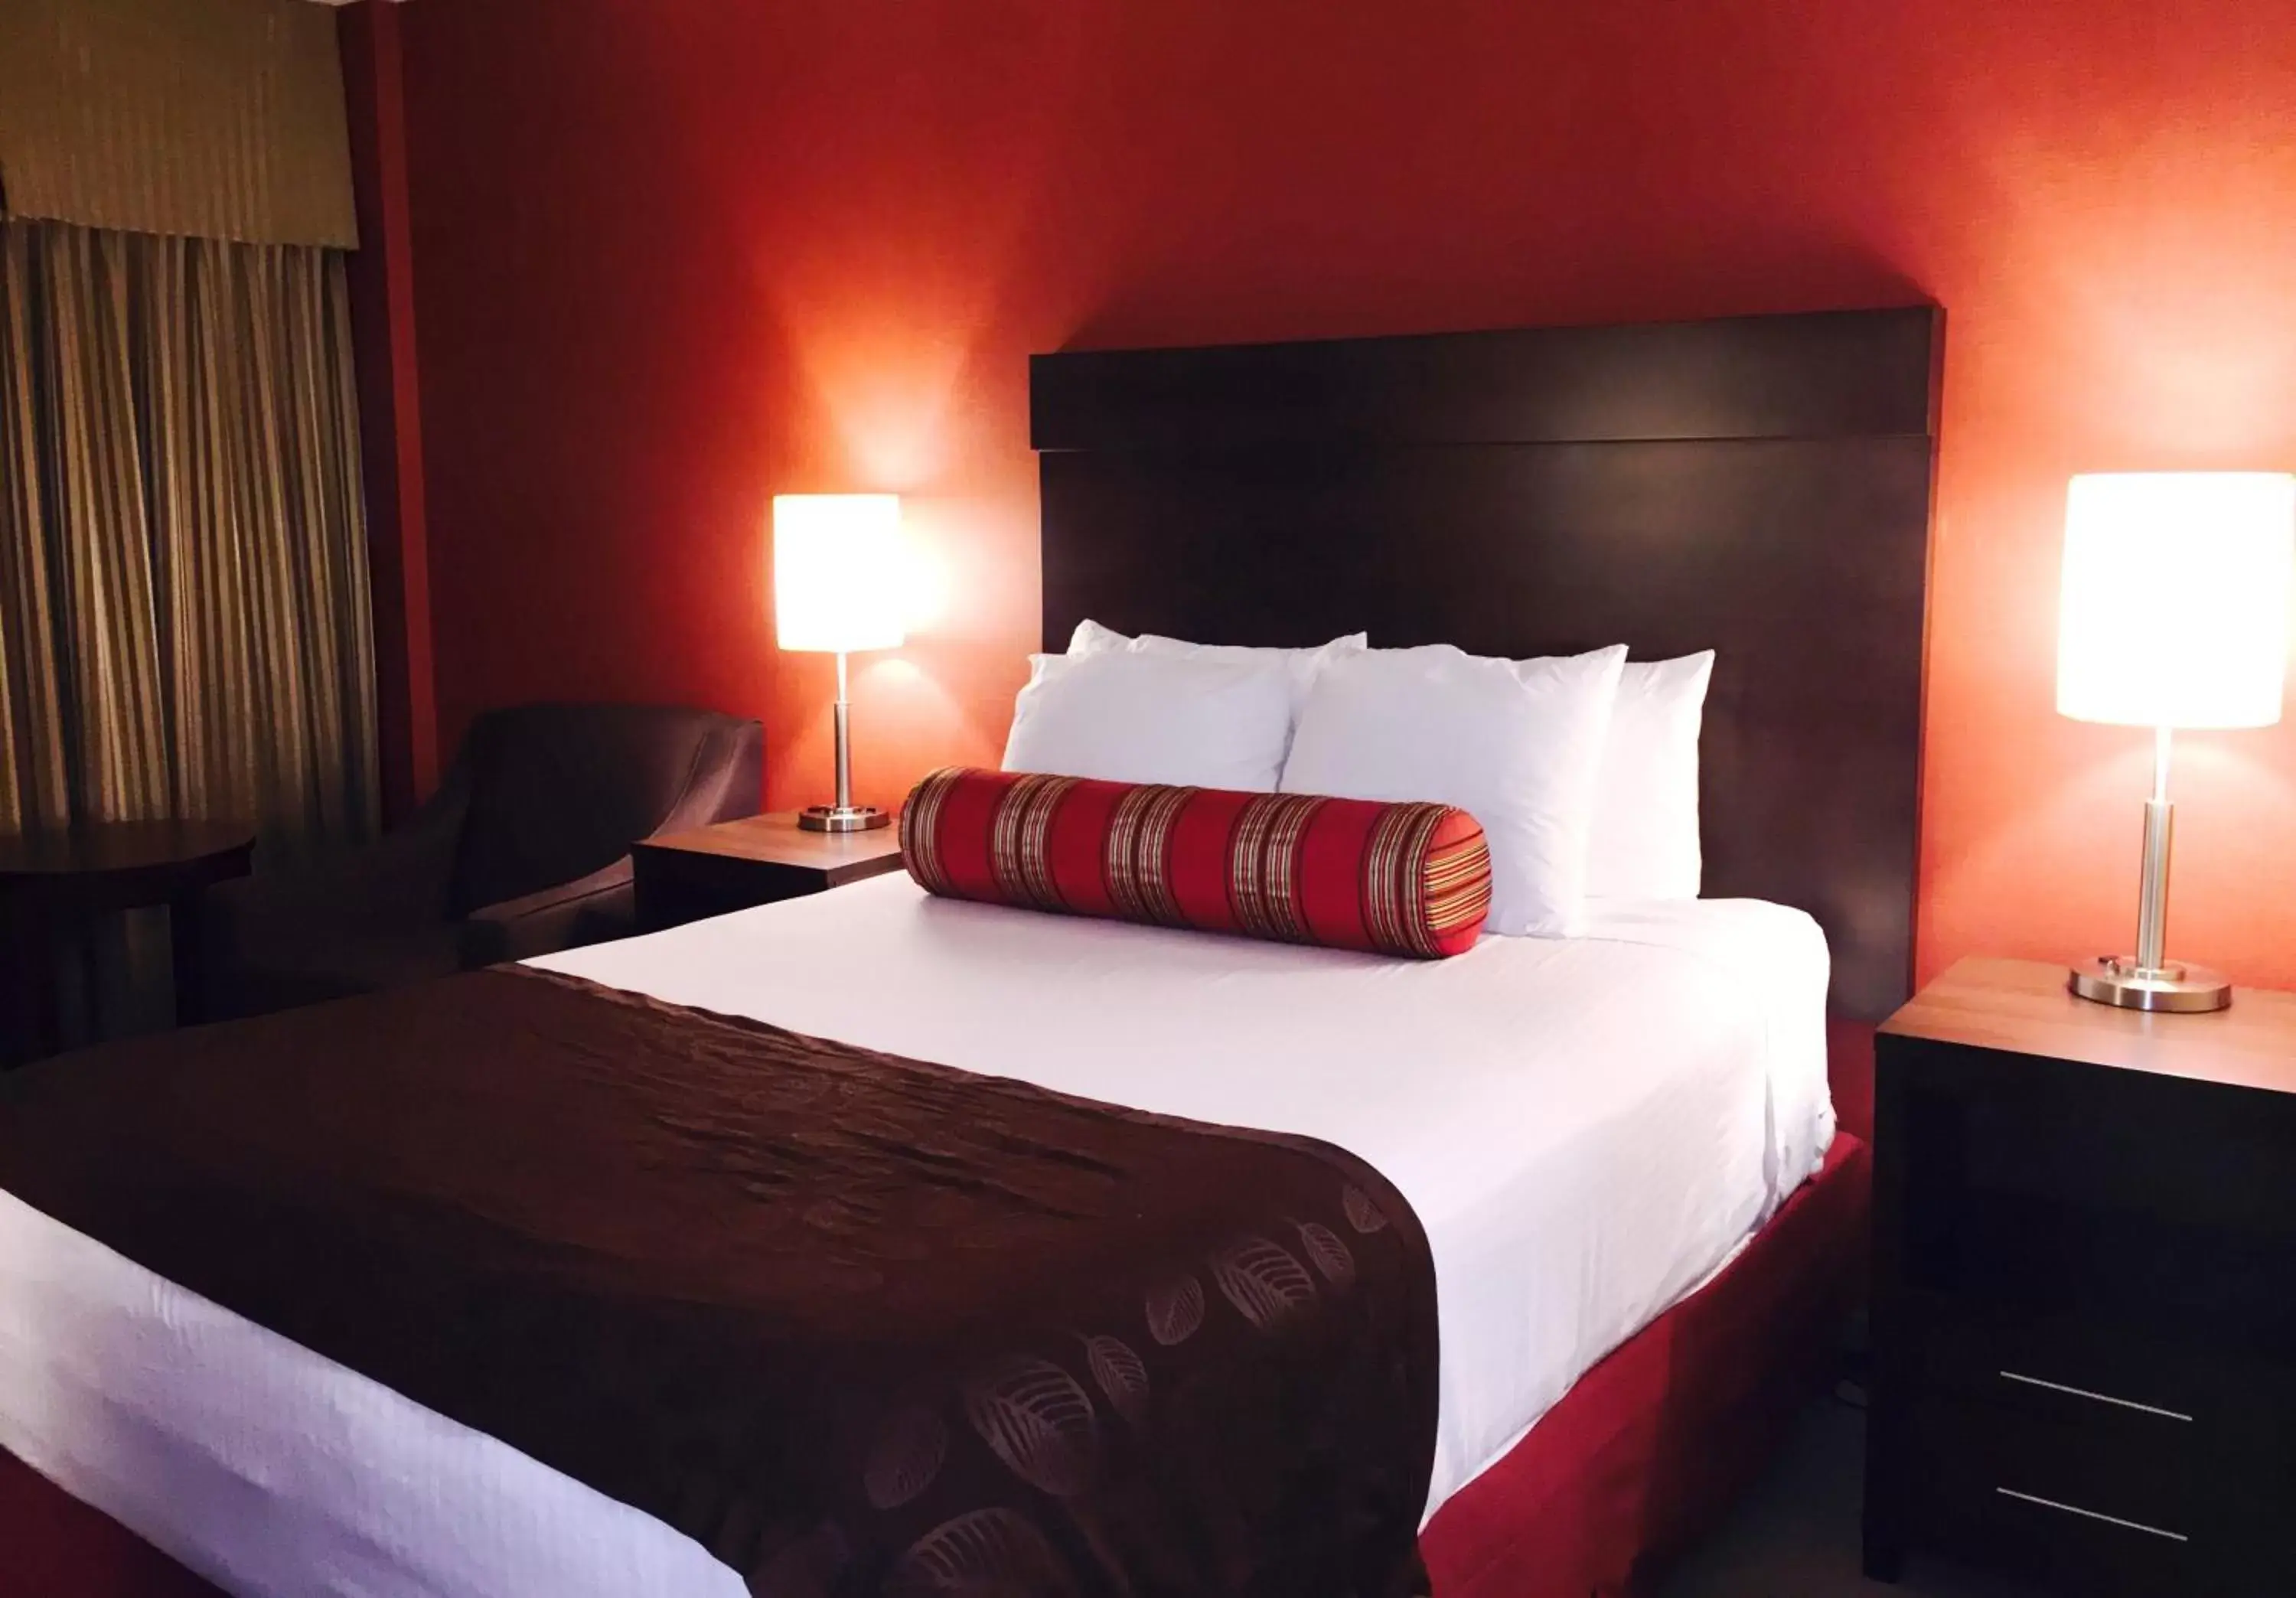 Bed, Room Photo in Best Western Terrace Inn